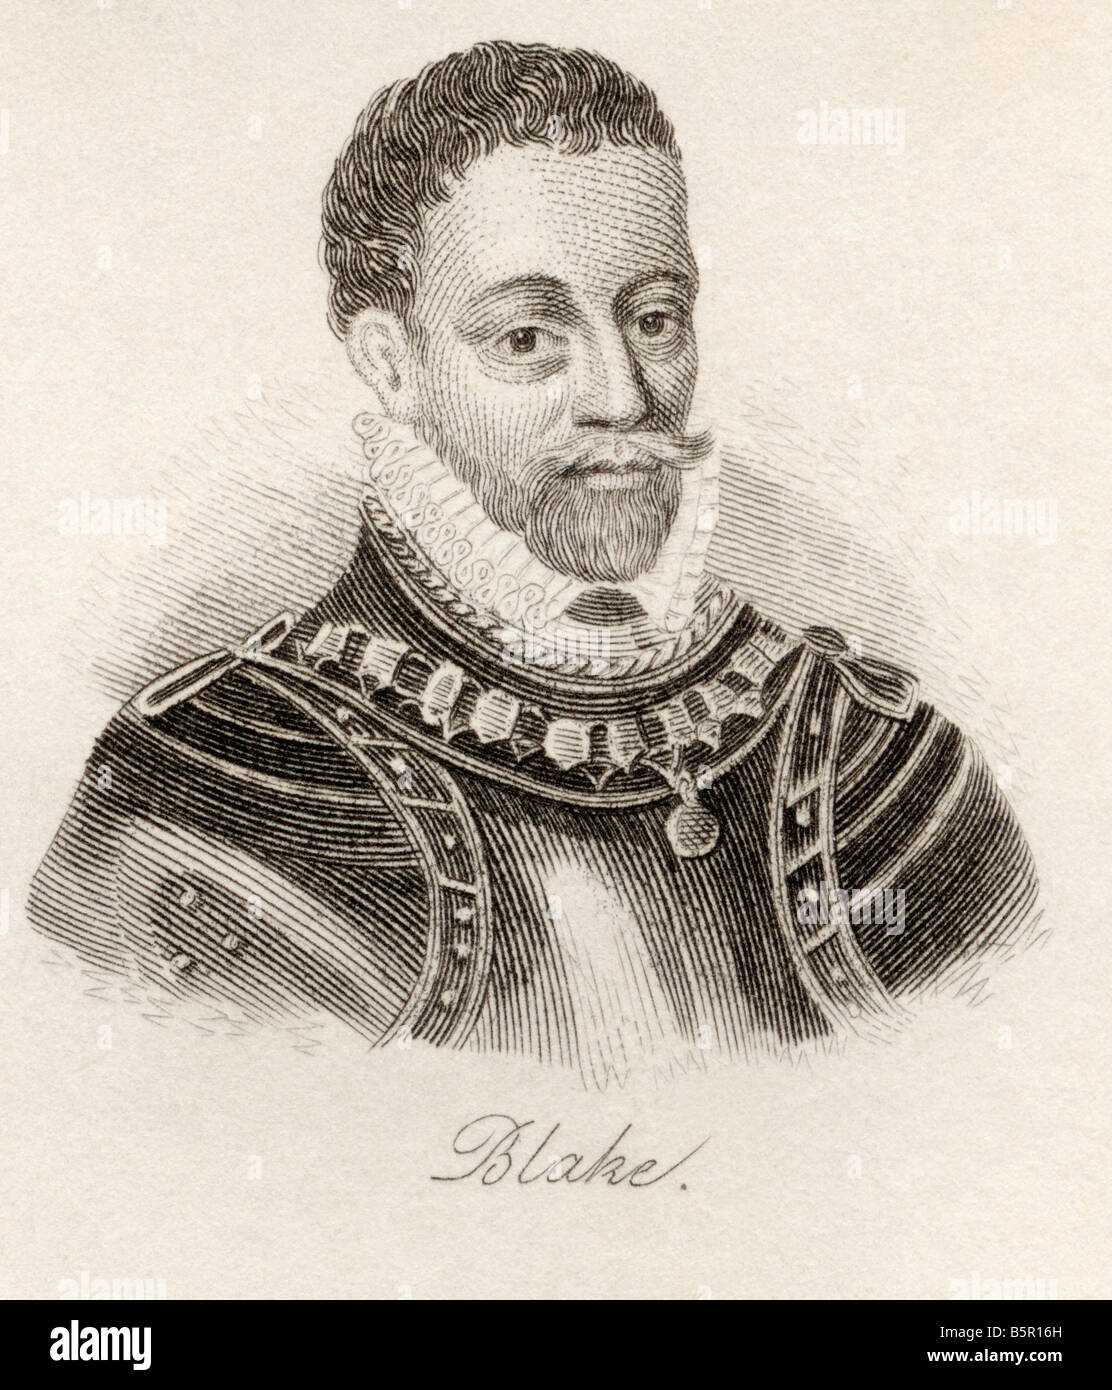 Robert Blake, 1599 -1657. L'amiral et commandant de la marine anglaise. Du livre du Crabb Dictionnaire historique, publié en 1825. Banque D'Images